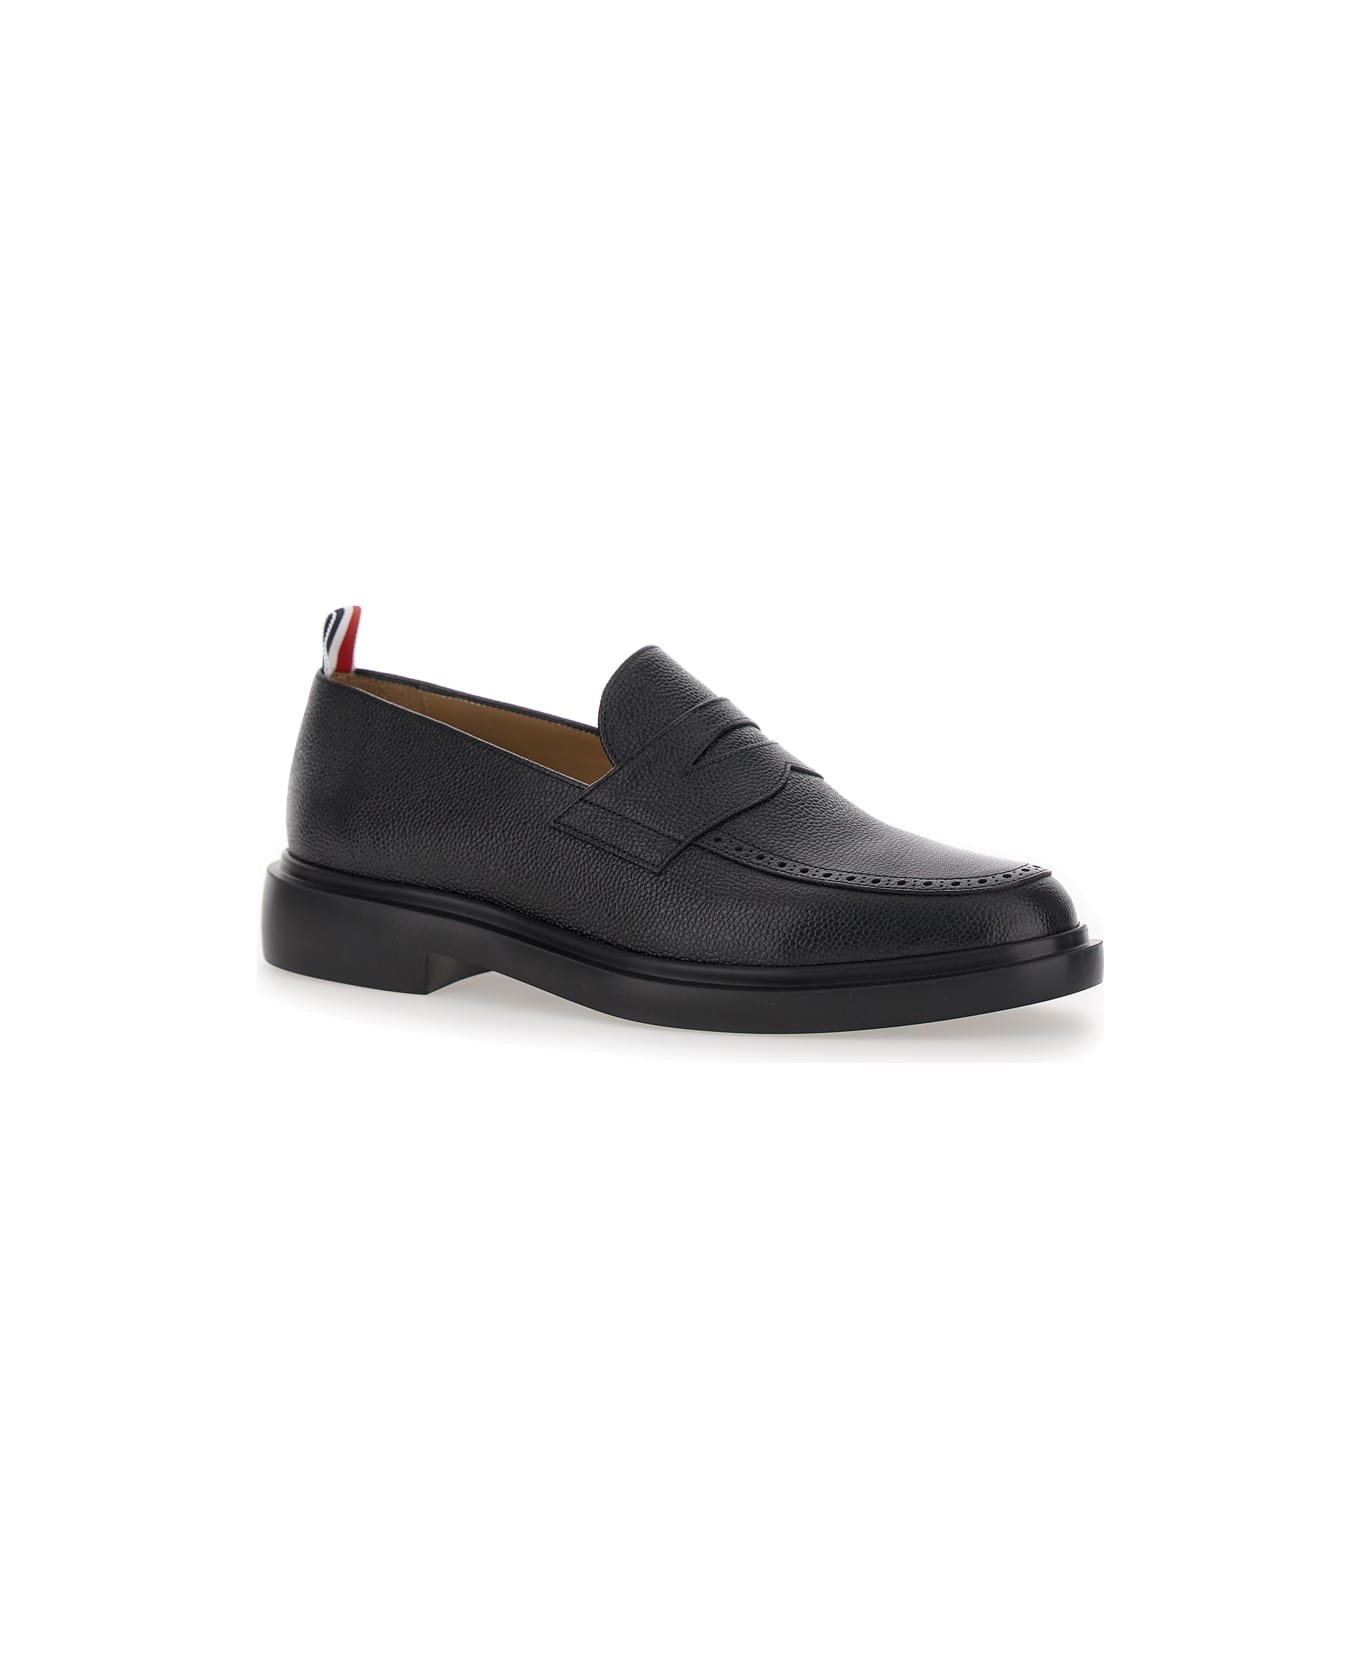 Thom Browne Black Slip-on Loafers With Loop Detail In Leather Man - Black